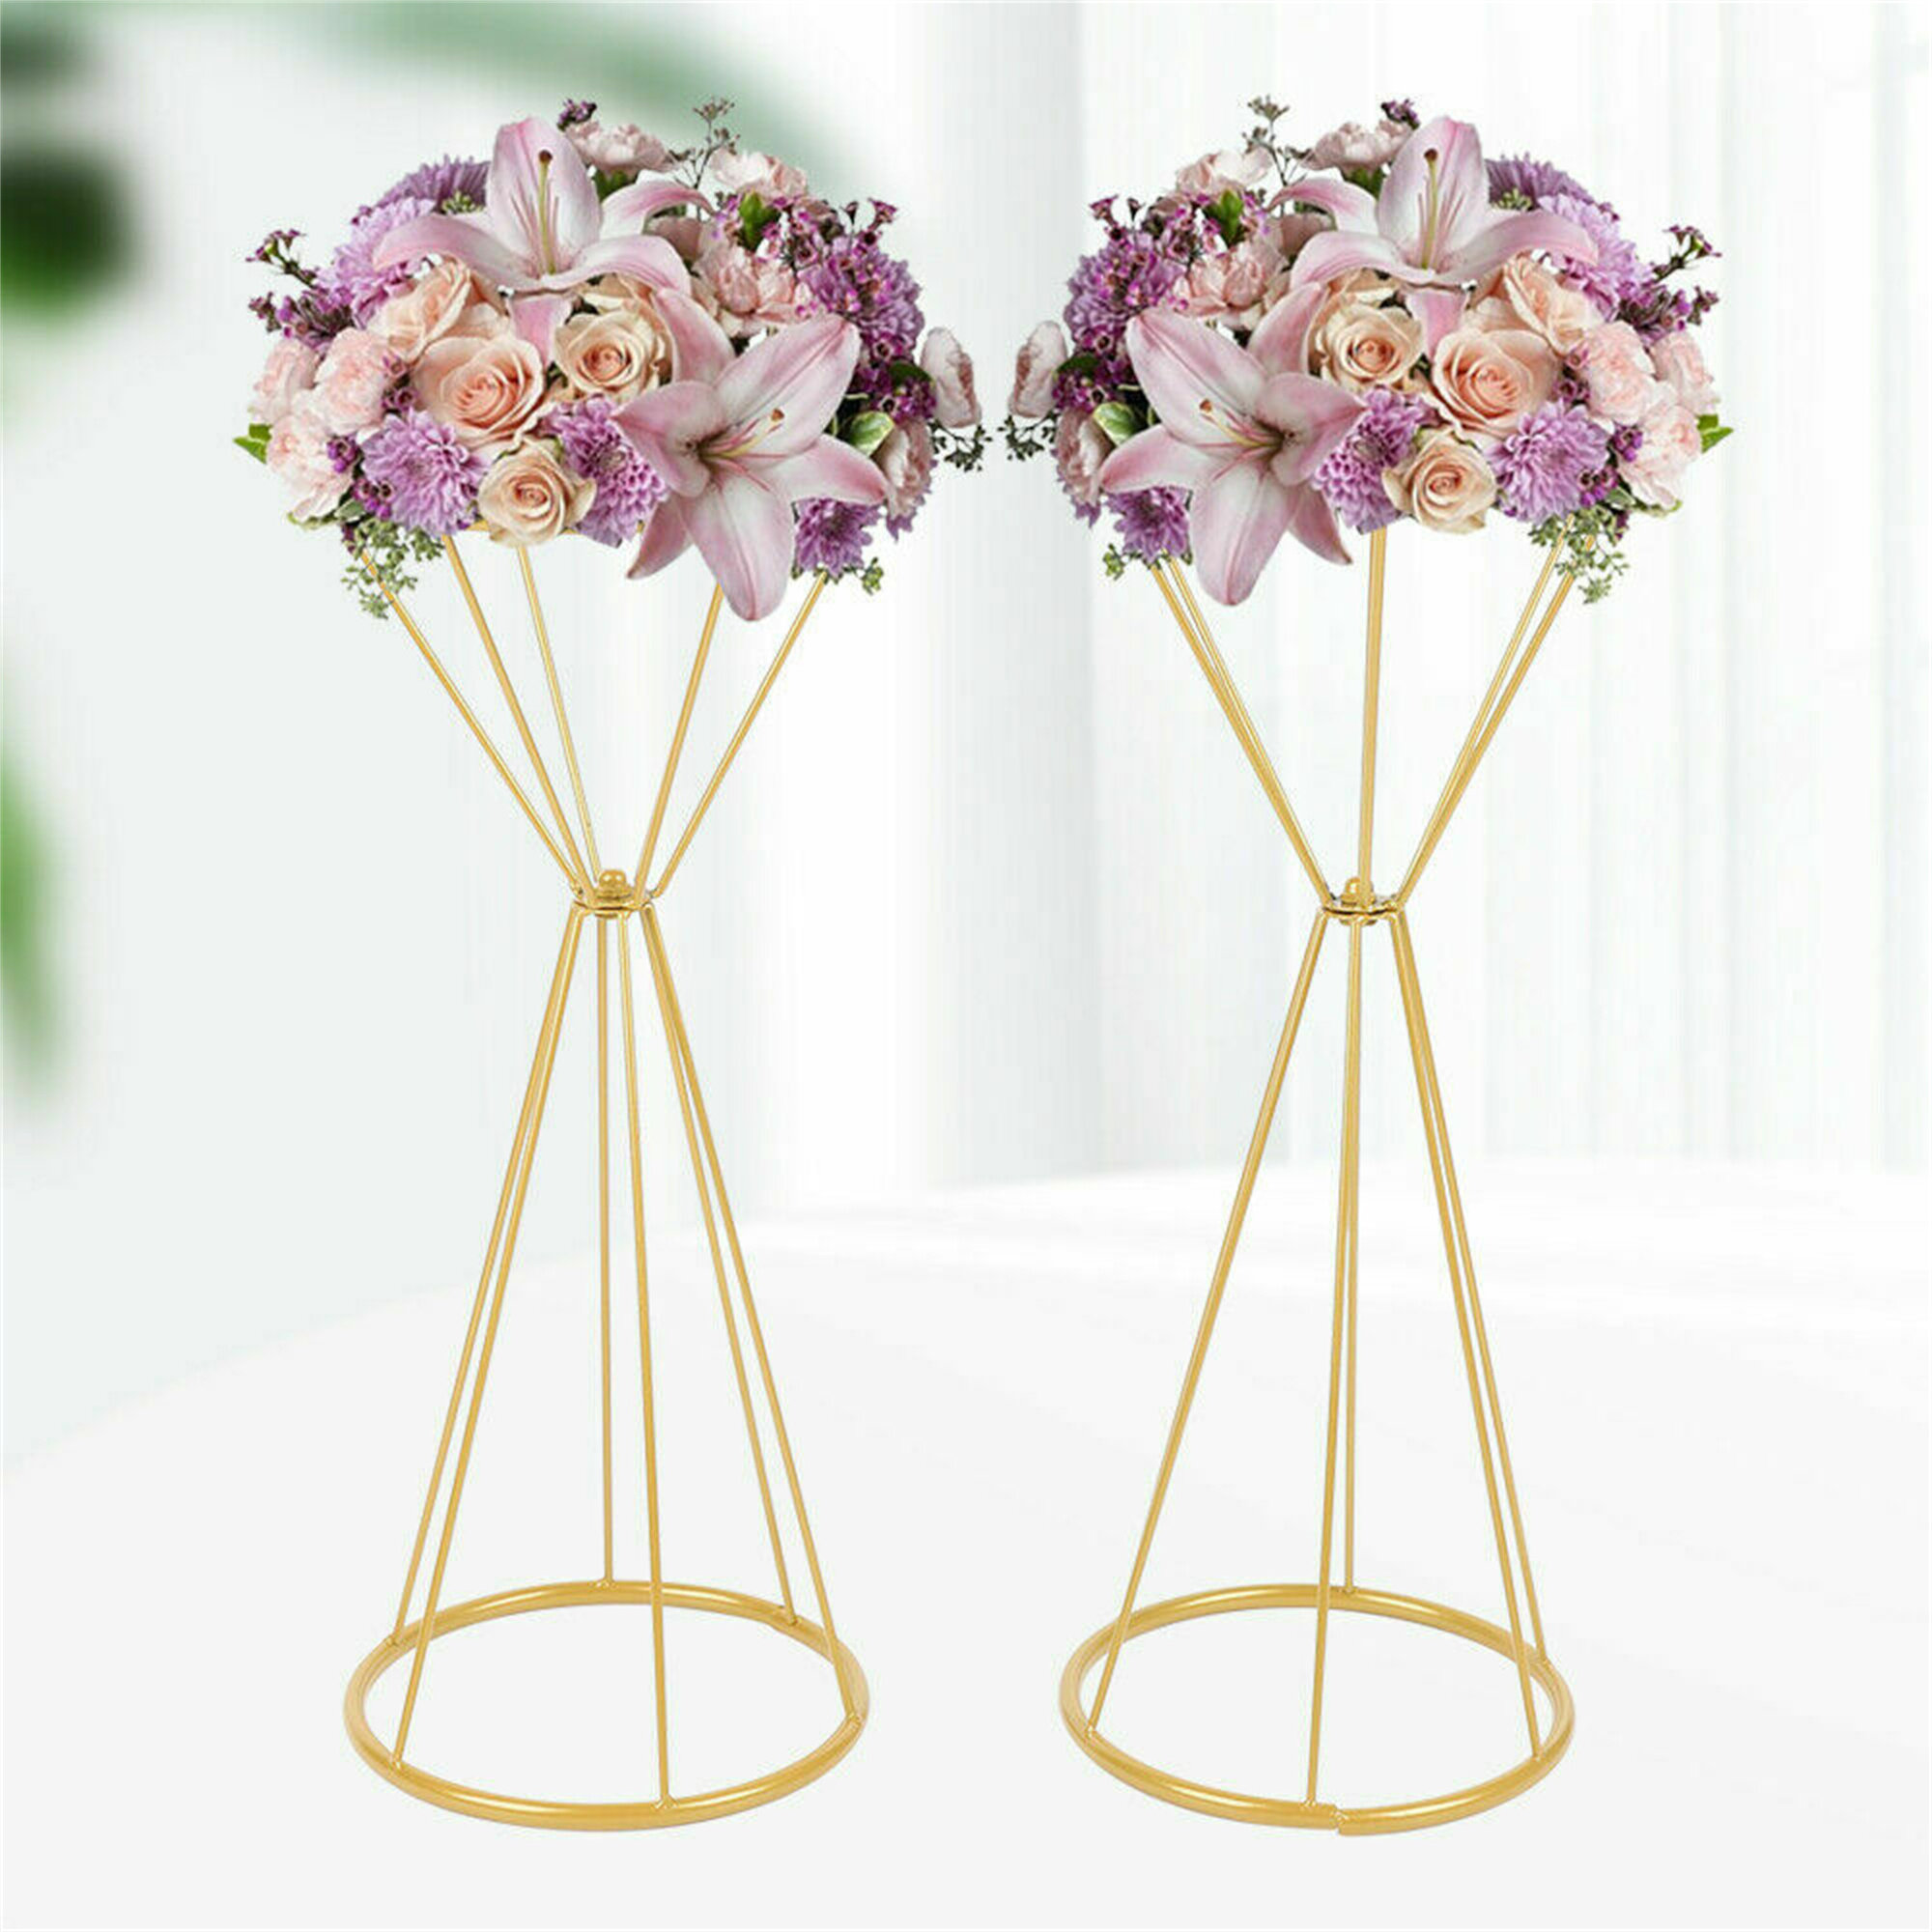 for My Bride Gold Versed Vases Flower Vase 